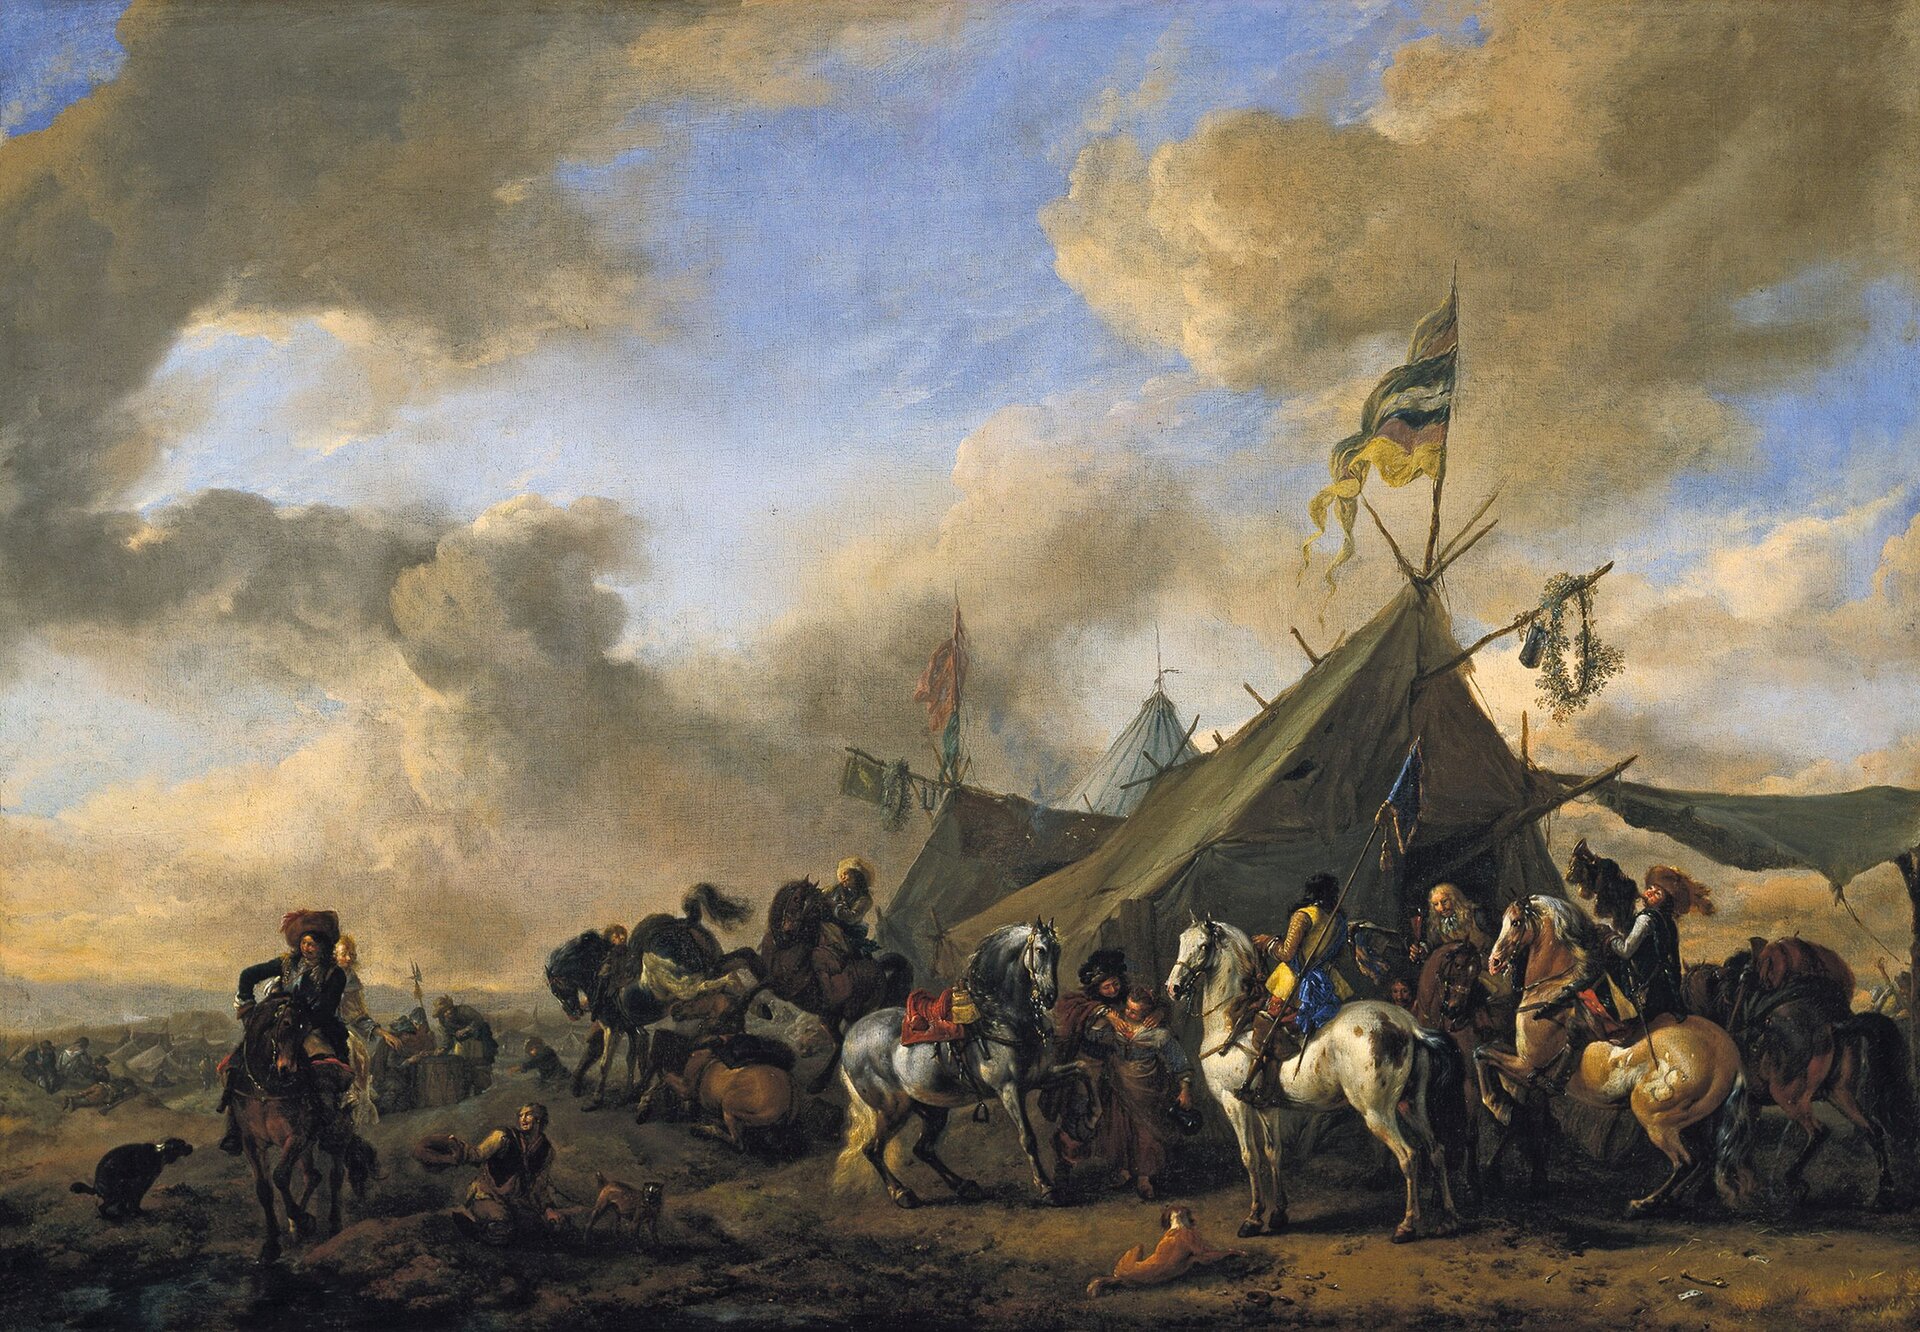 Zdjęcie przedstawia obraz Philipsa Wouwermana pt. „Obóz wojskowy”. Wouwerman to holenderski malarz barokowy. Na pierwszym planie ukazani są mężczyźni, którzy siedzą na koniach. Za nimi ukazany jest obóz, gdzie rozstawione są namioty.